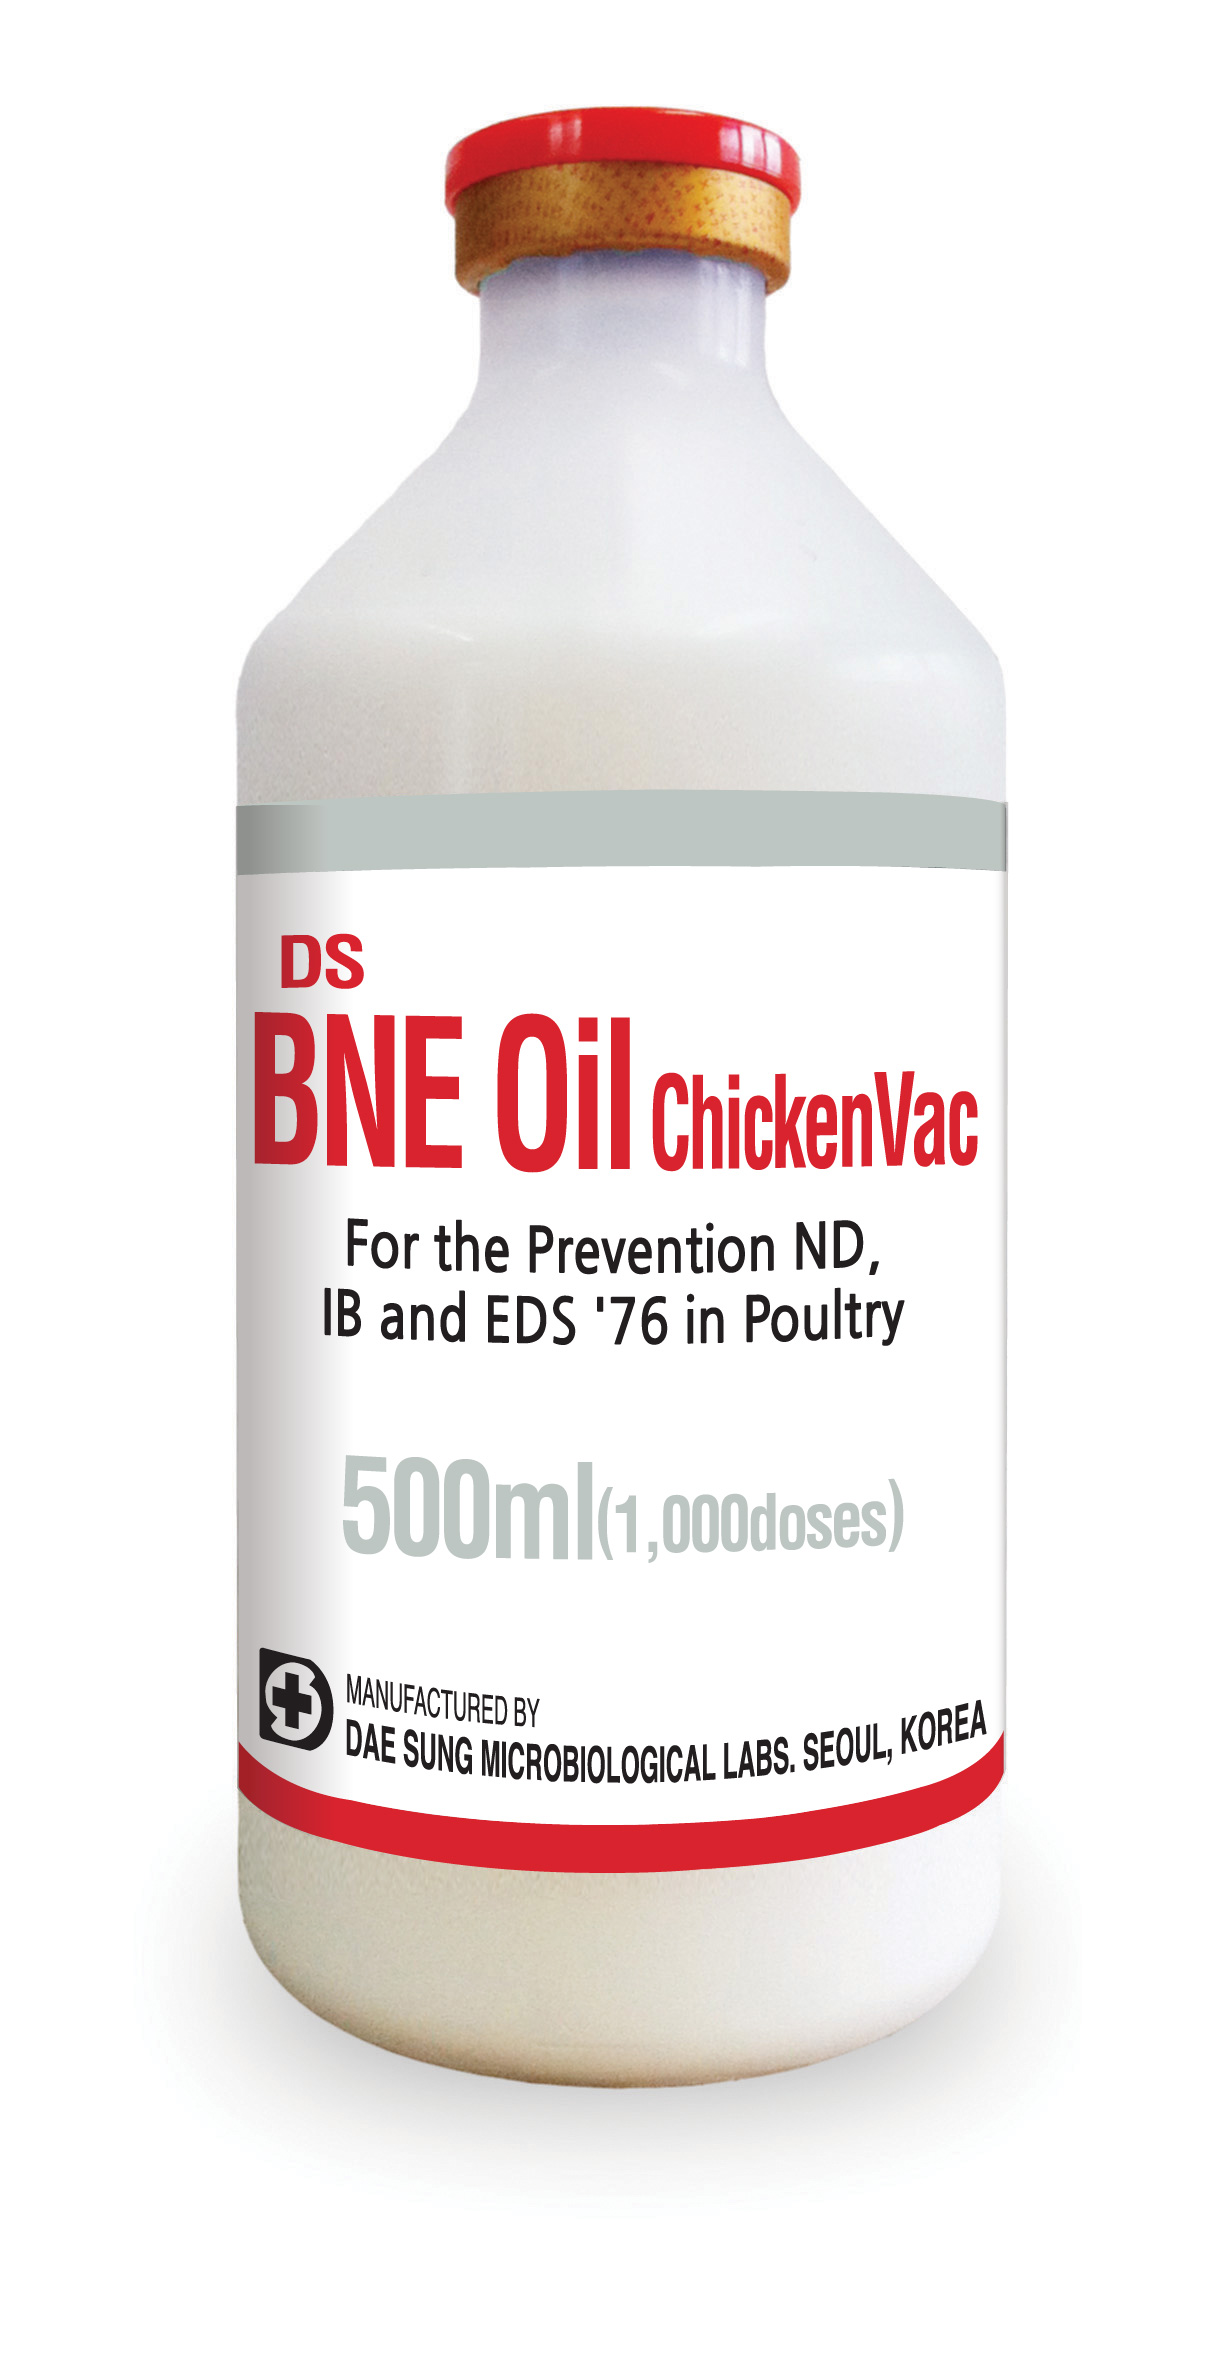 DS BNE Oil Chicken Vac